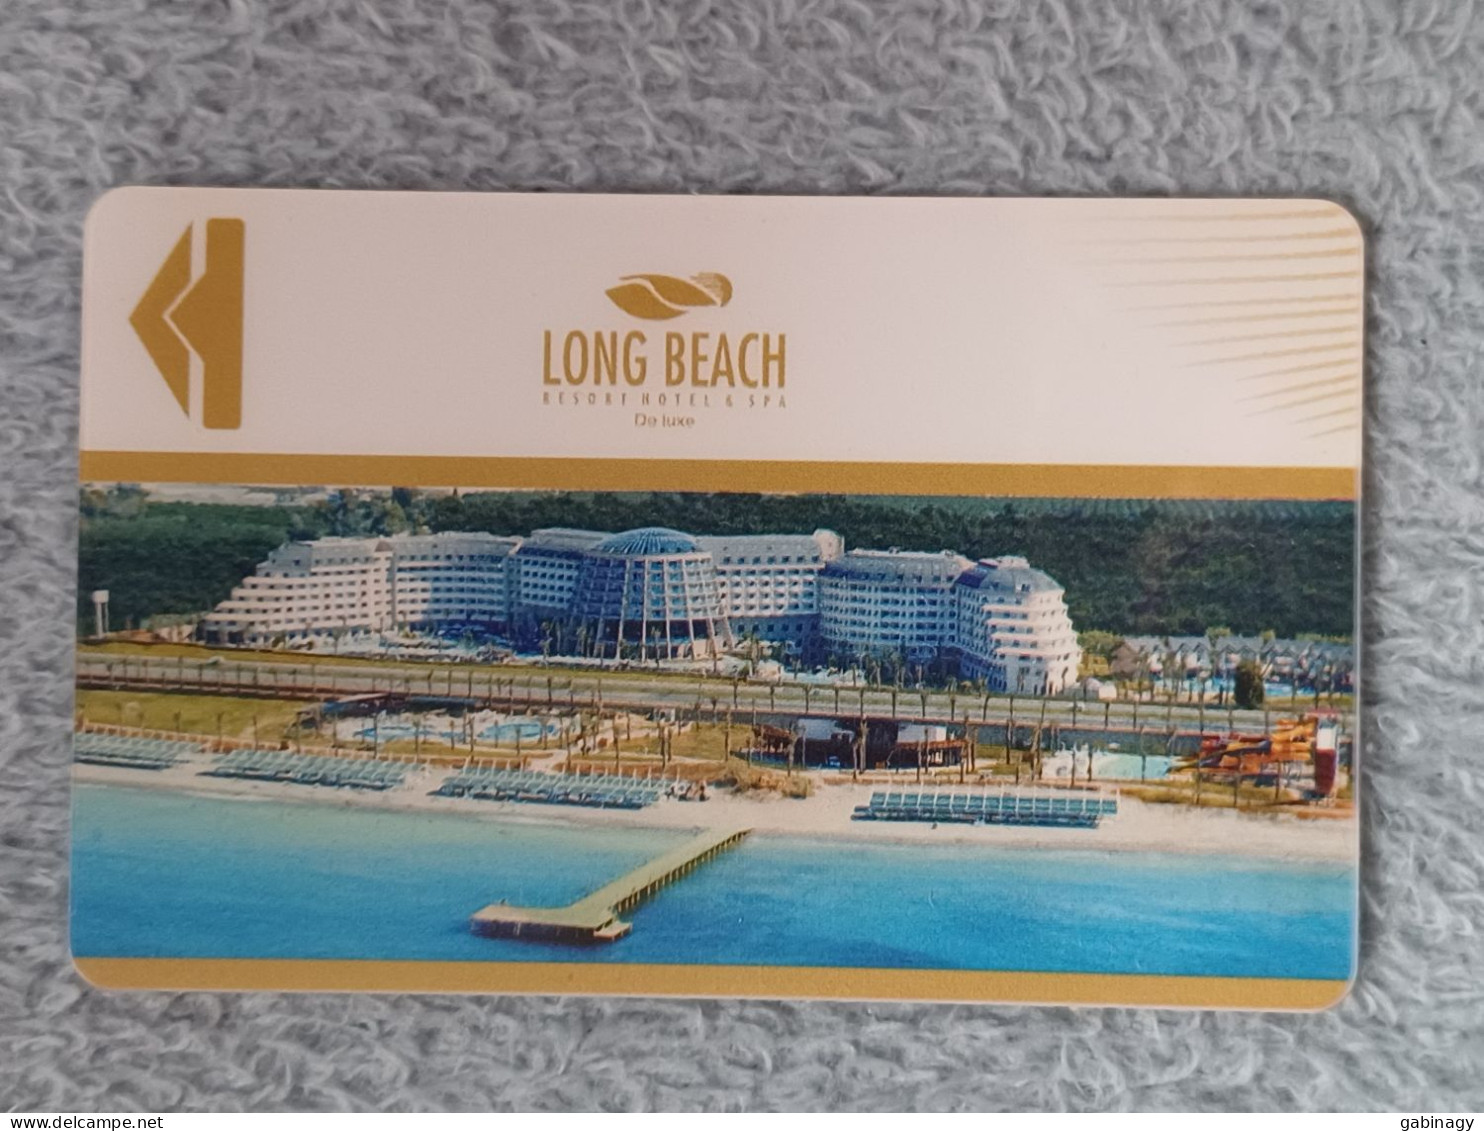 HOTEL KEYS - 2566 - TURKEY - LONG BEACH - Hotel Keycards